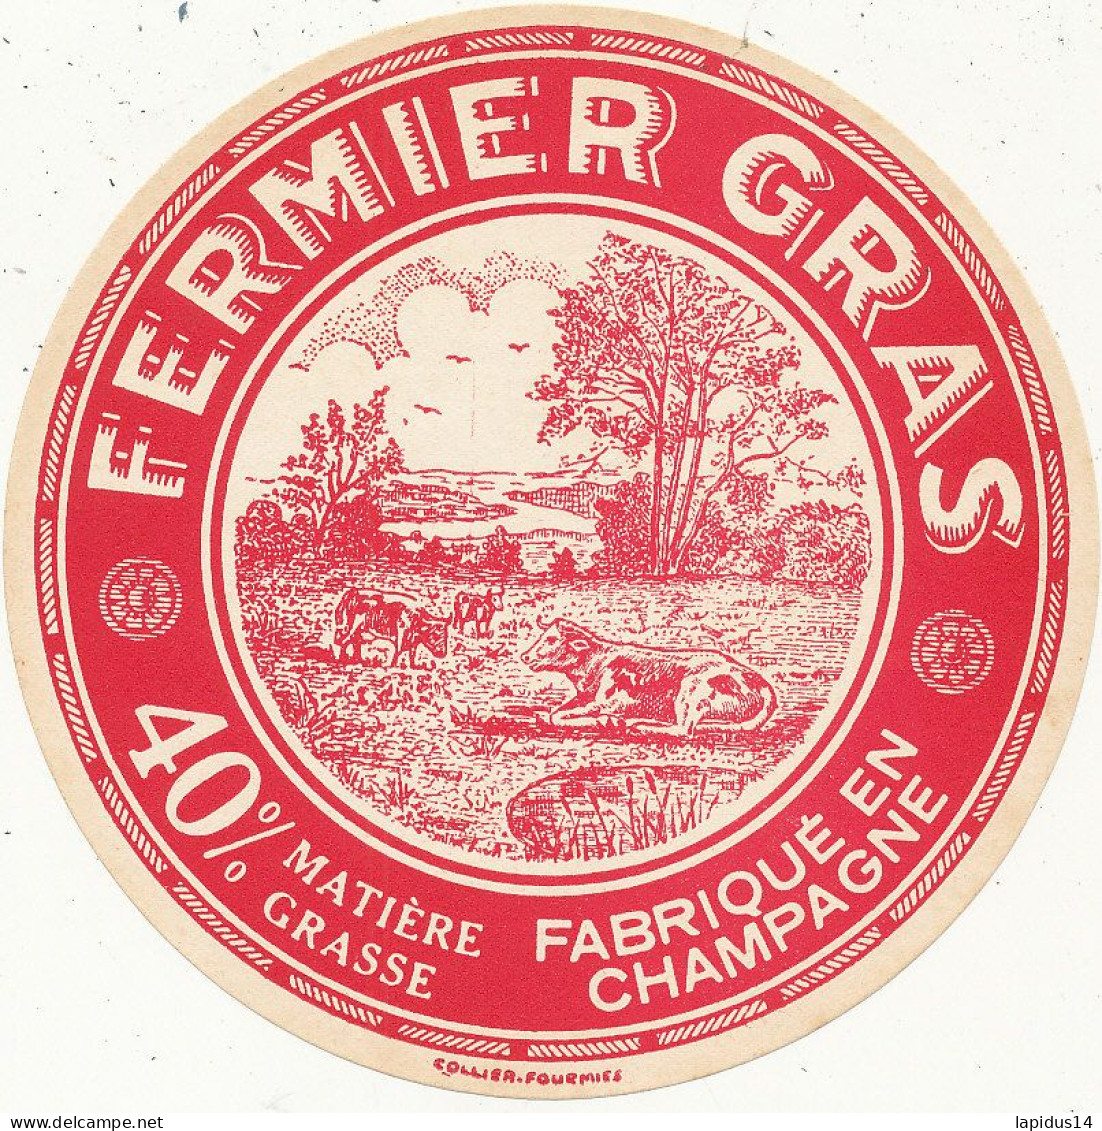 J C O  967 / ETIQUETTE FROMAGE    FERMIER GRAS  FABRIQUE EN CHAMPAGNE 40% - Cheese